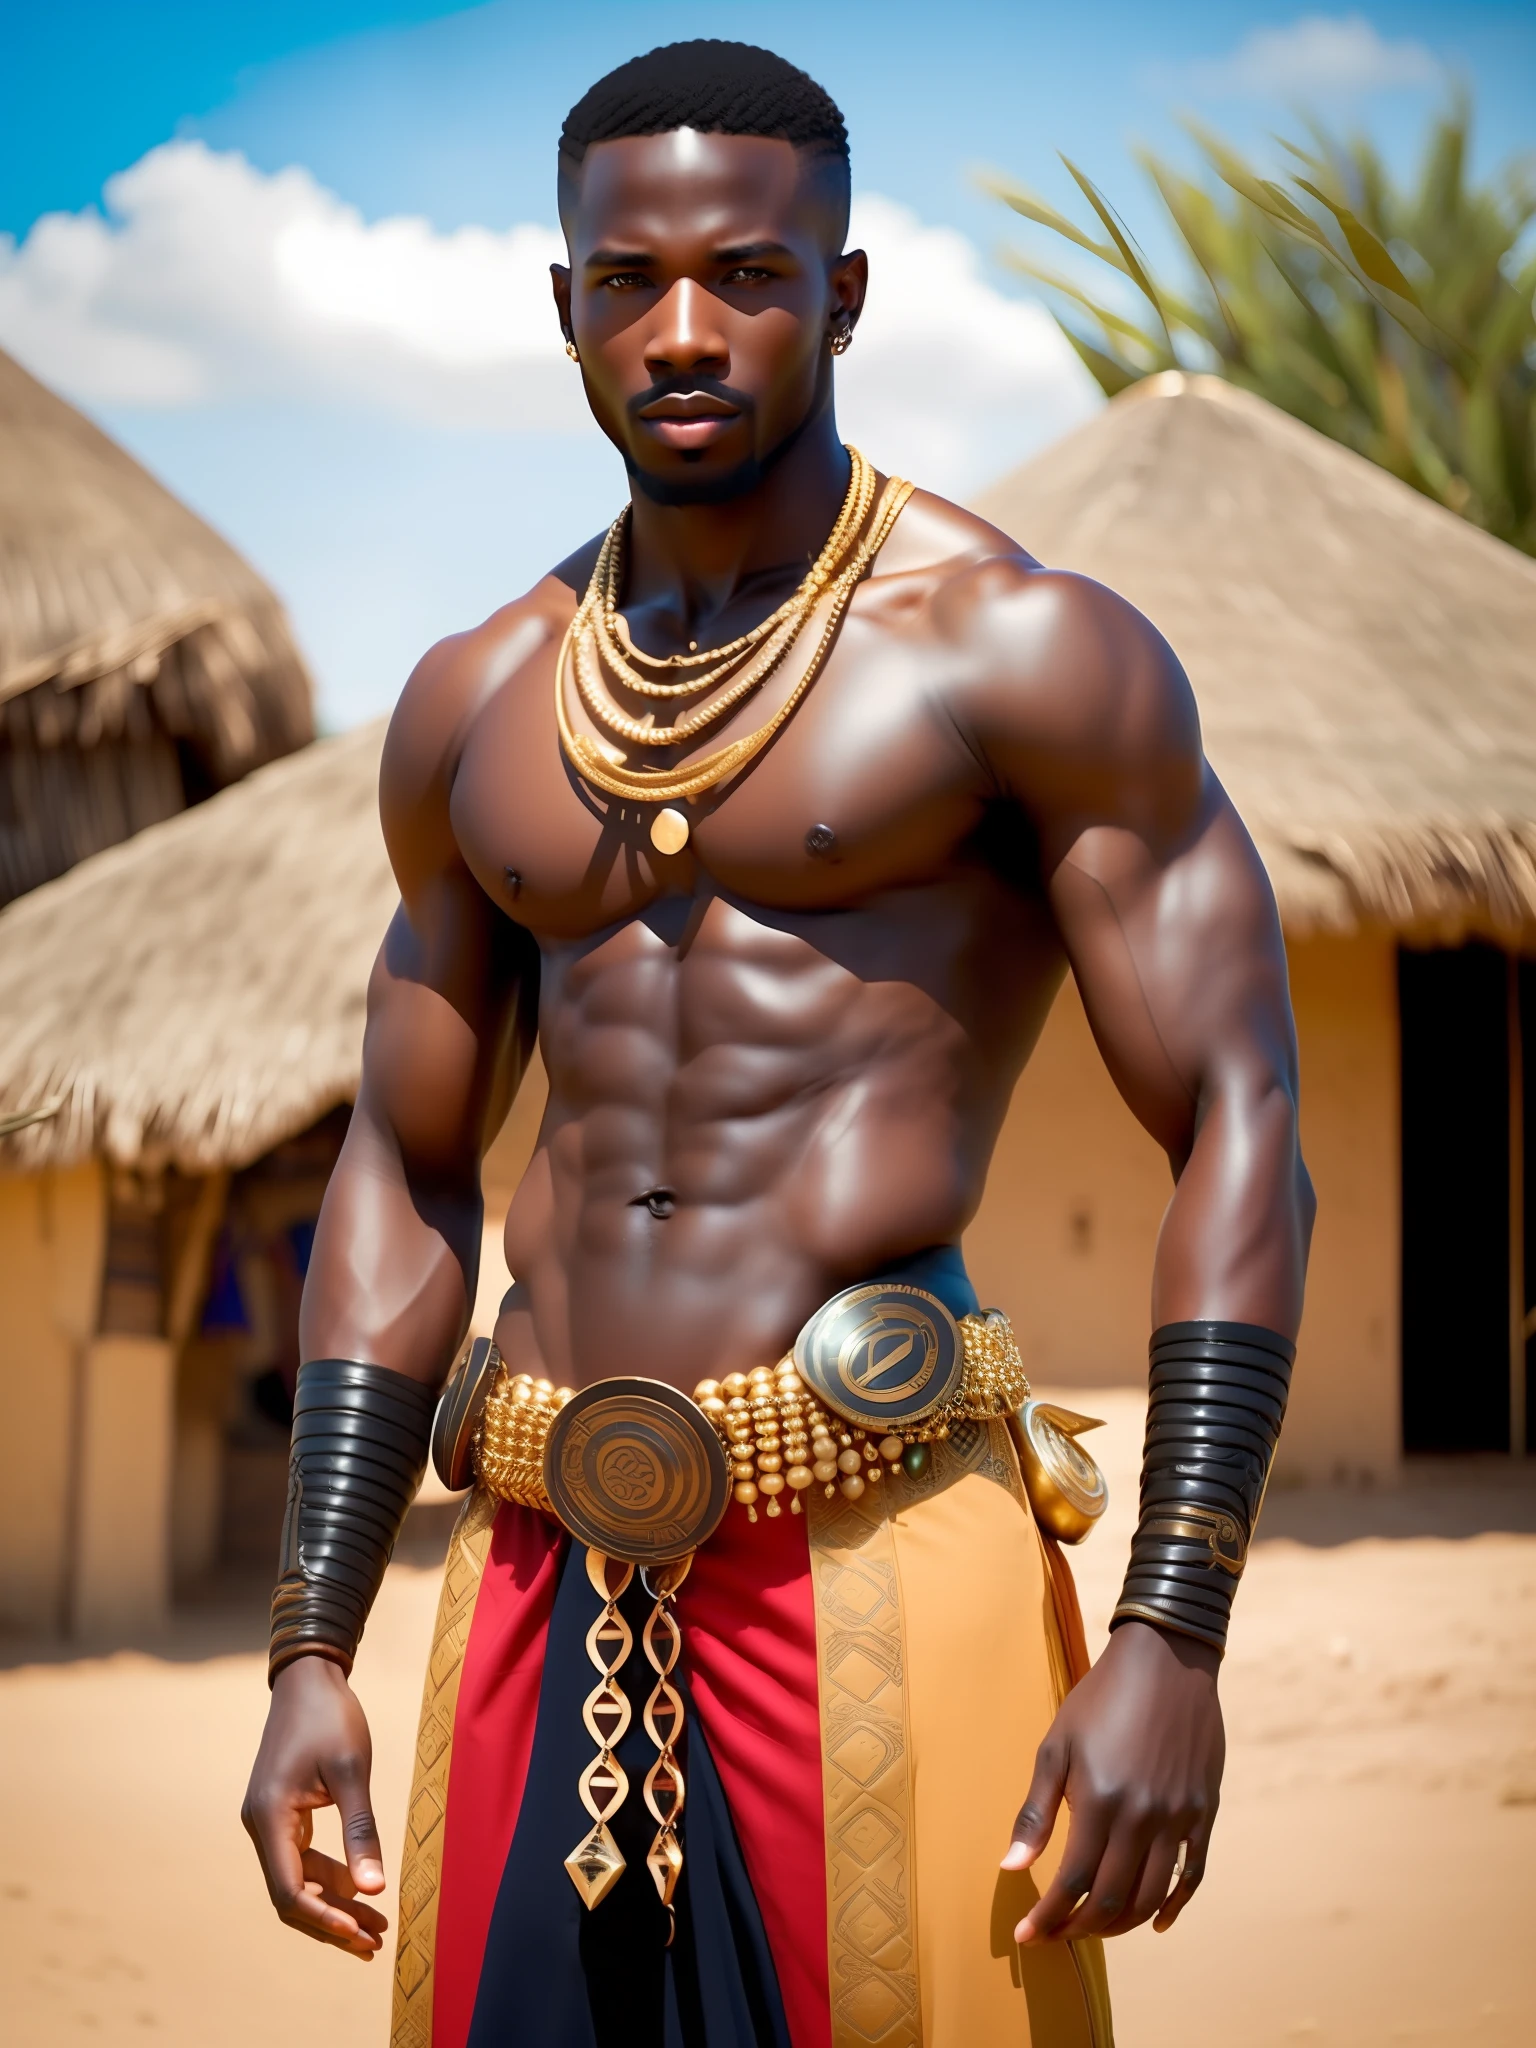 porra_ficção científica, porra_ficção científica_v2, retrato de um jovem, homem guerreiro africano musculoso, muito bonito e atraente, em frente a uma aldeia africana, ricas roupas coloridas e joias africanas douradas, fechar-se, pose e atitude reais. porra_cinema_v2.